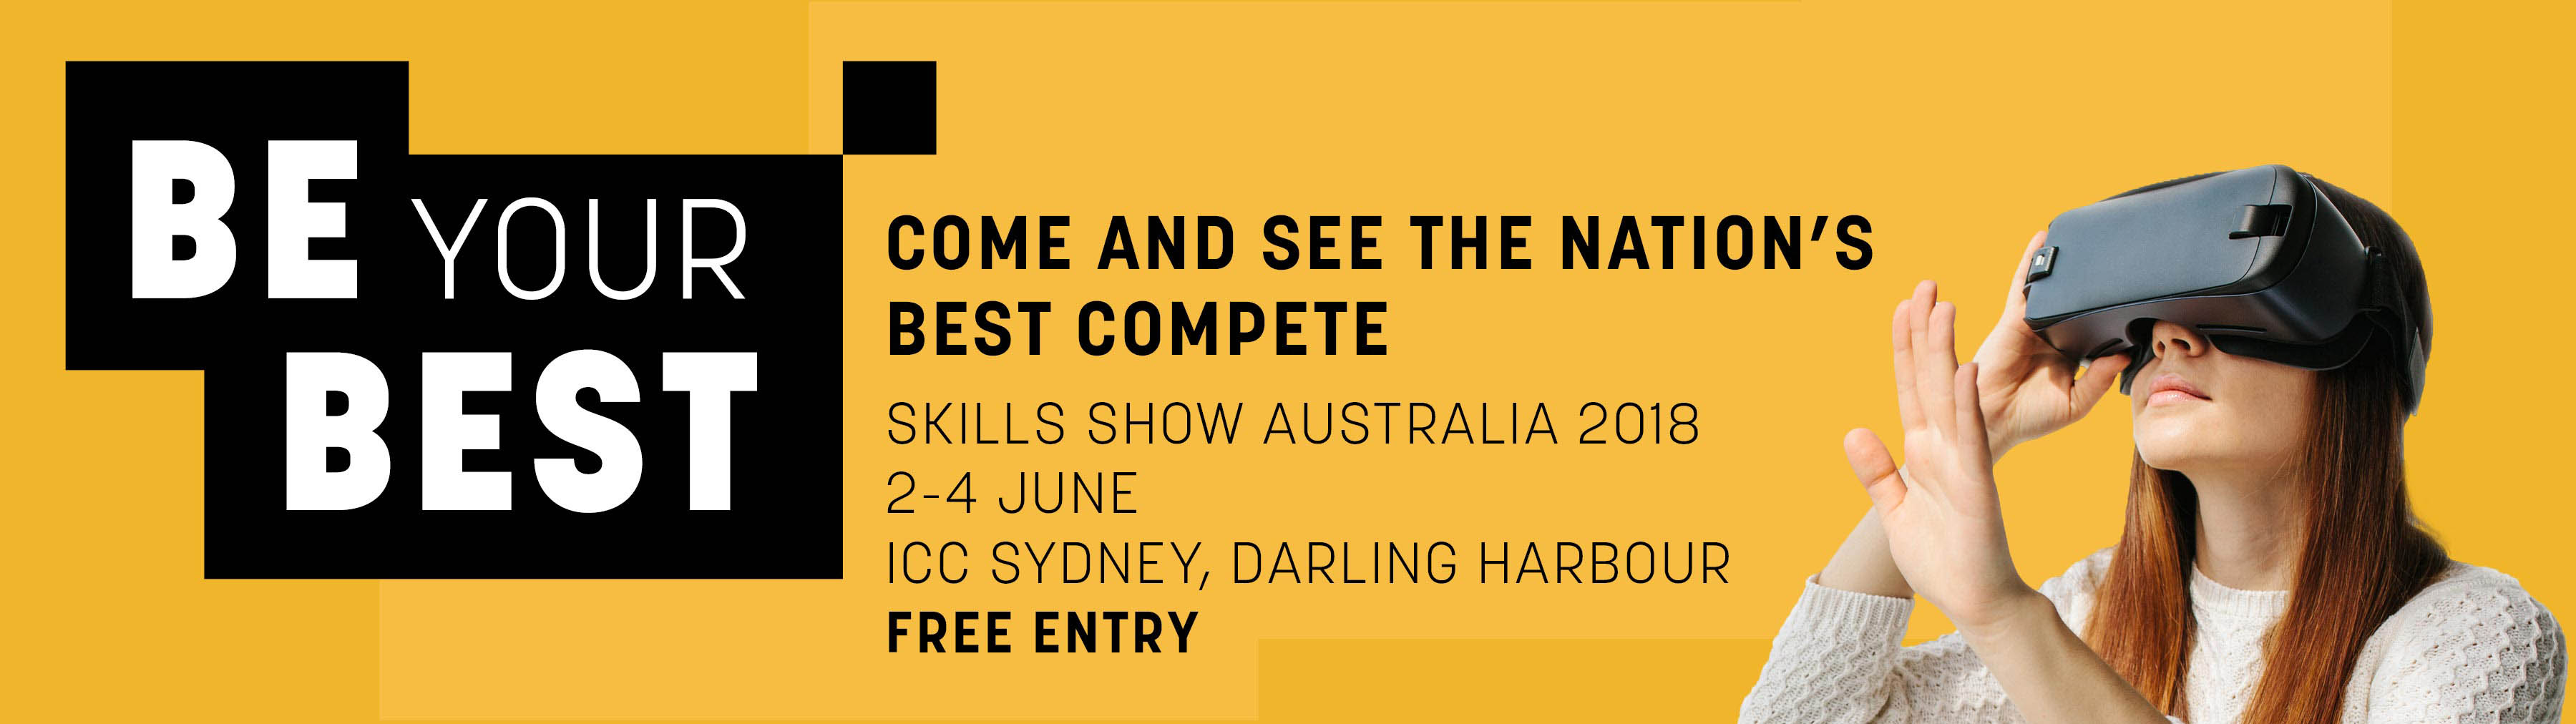 Skills Show Australia 2018